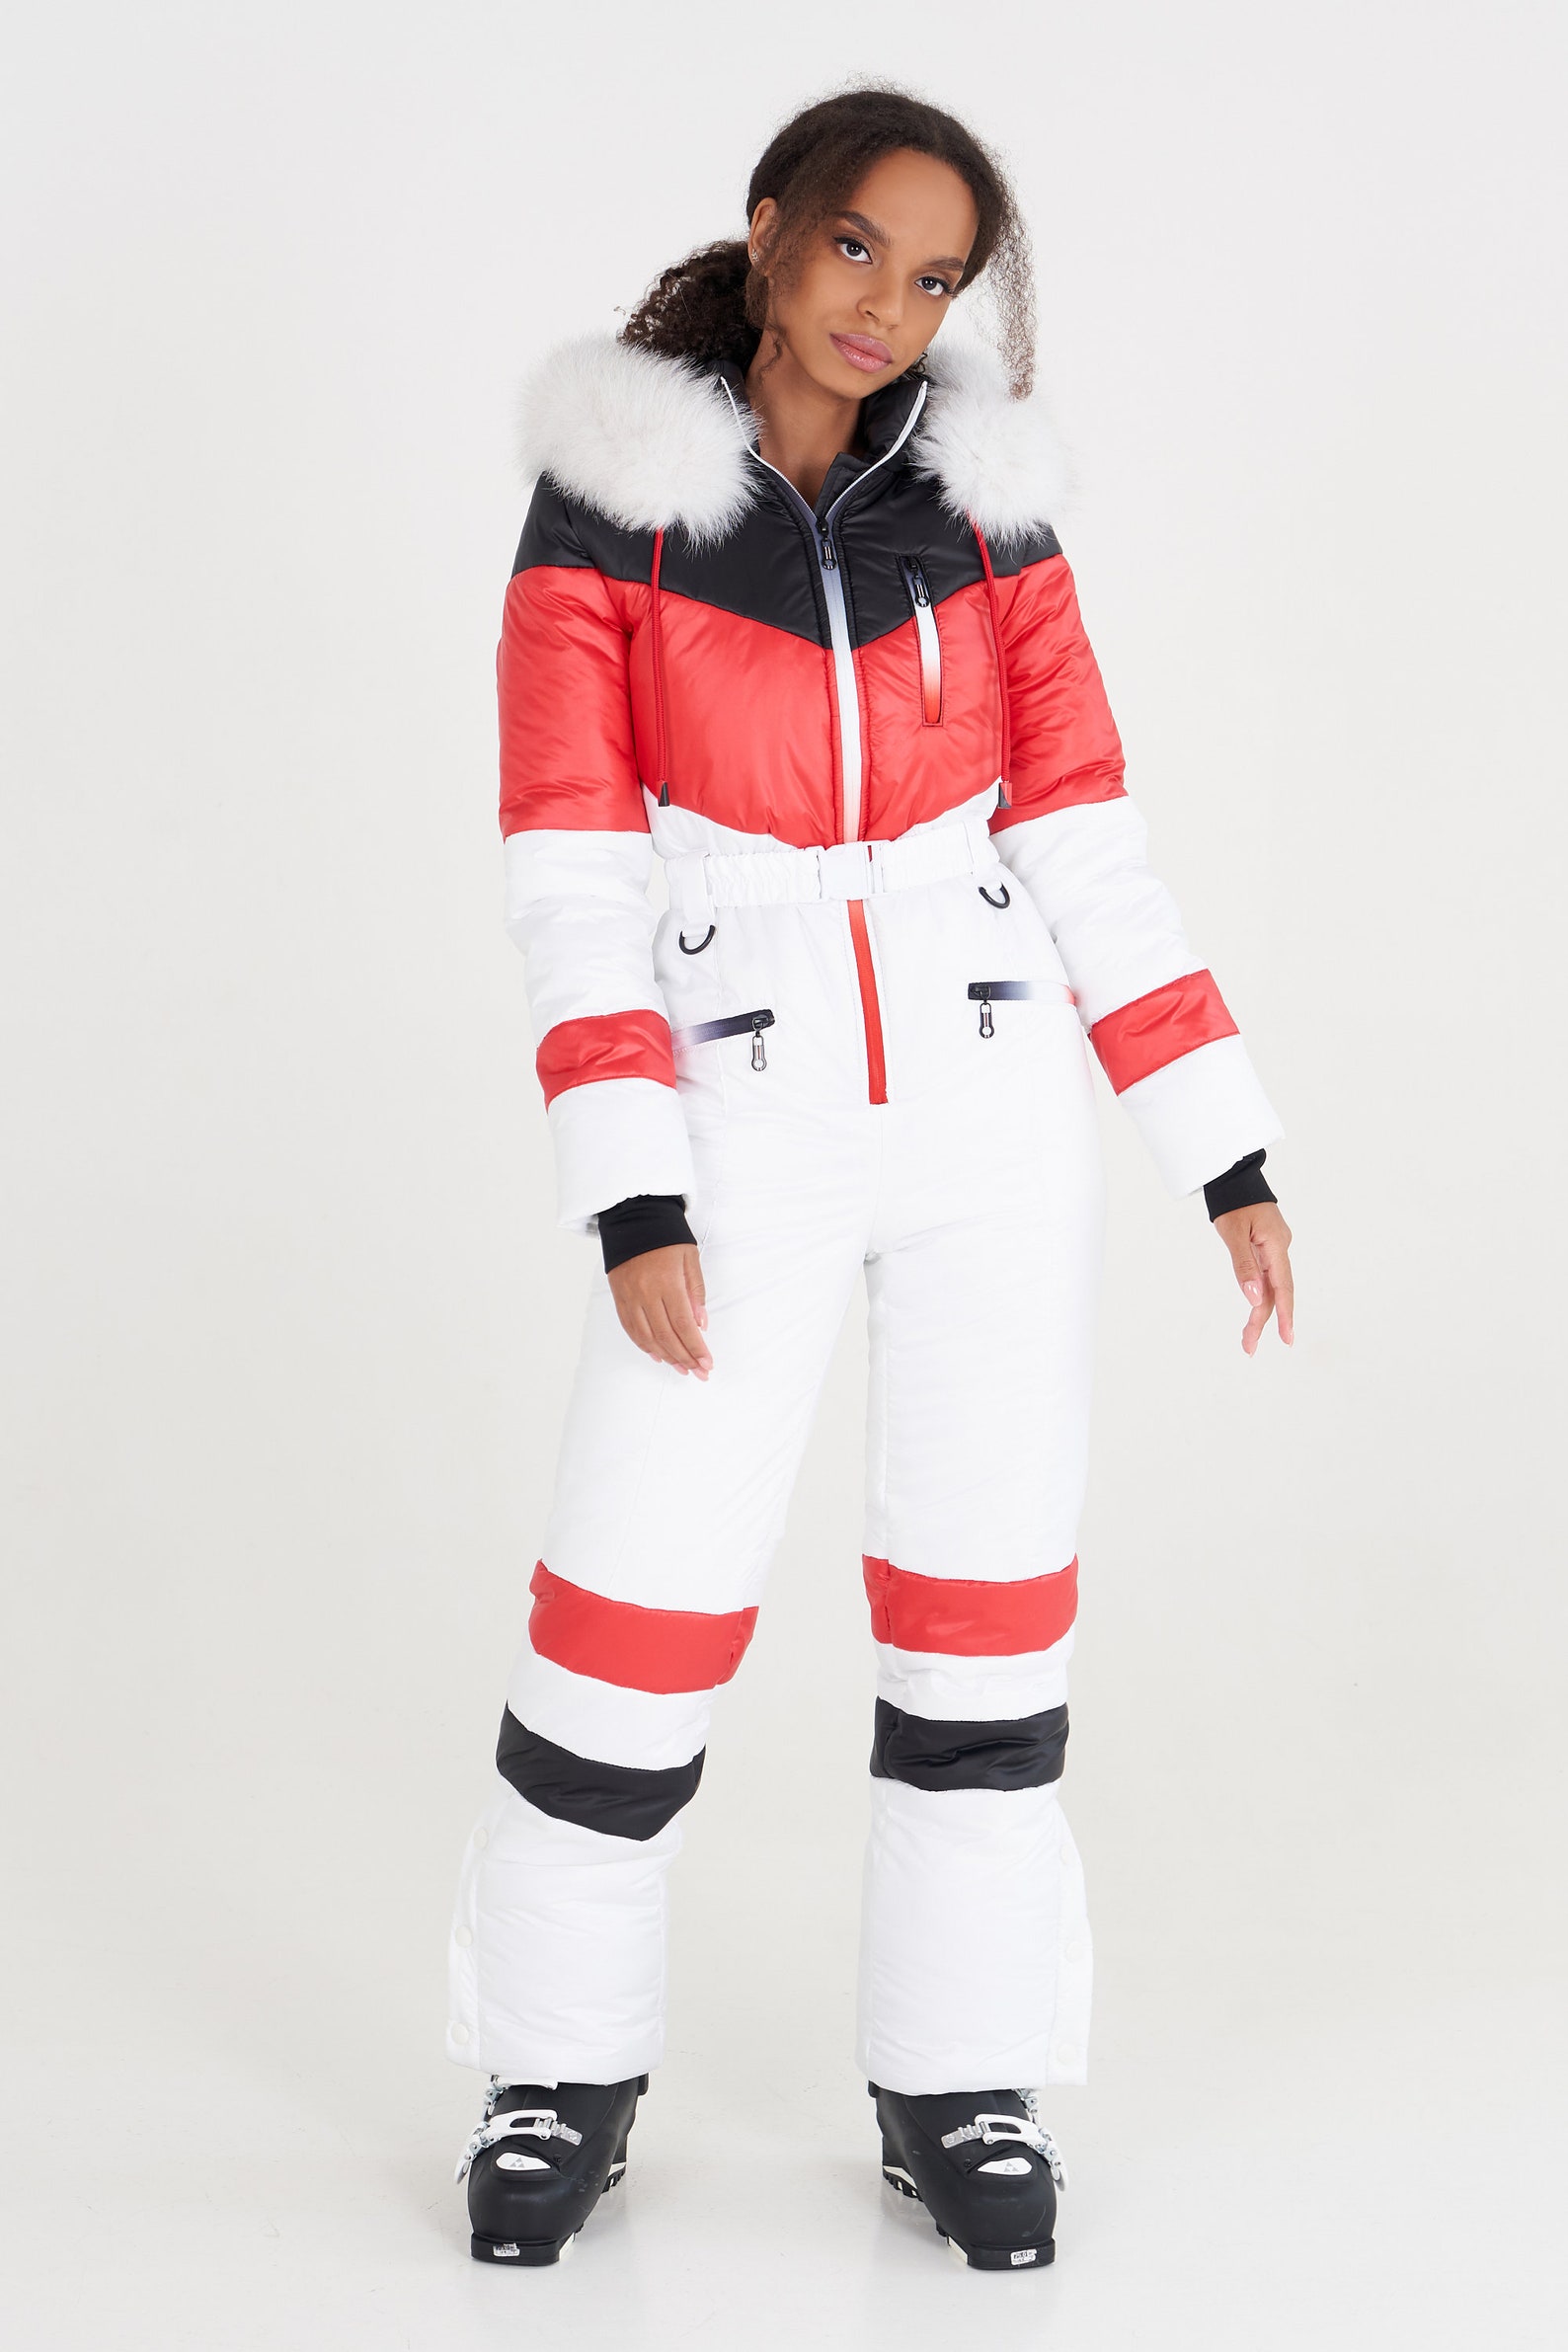 Womens Snowsuit White Womens Ski Suit Black Womens Ski Suit | Etsy